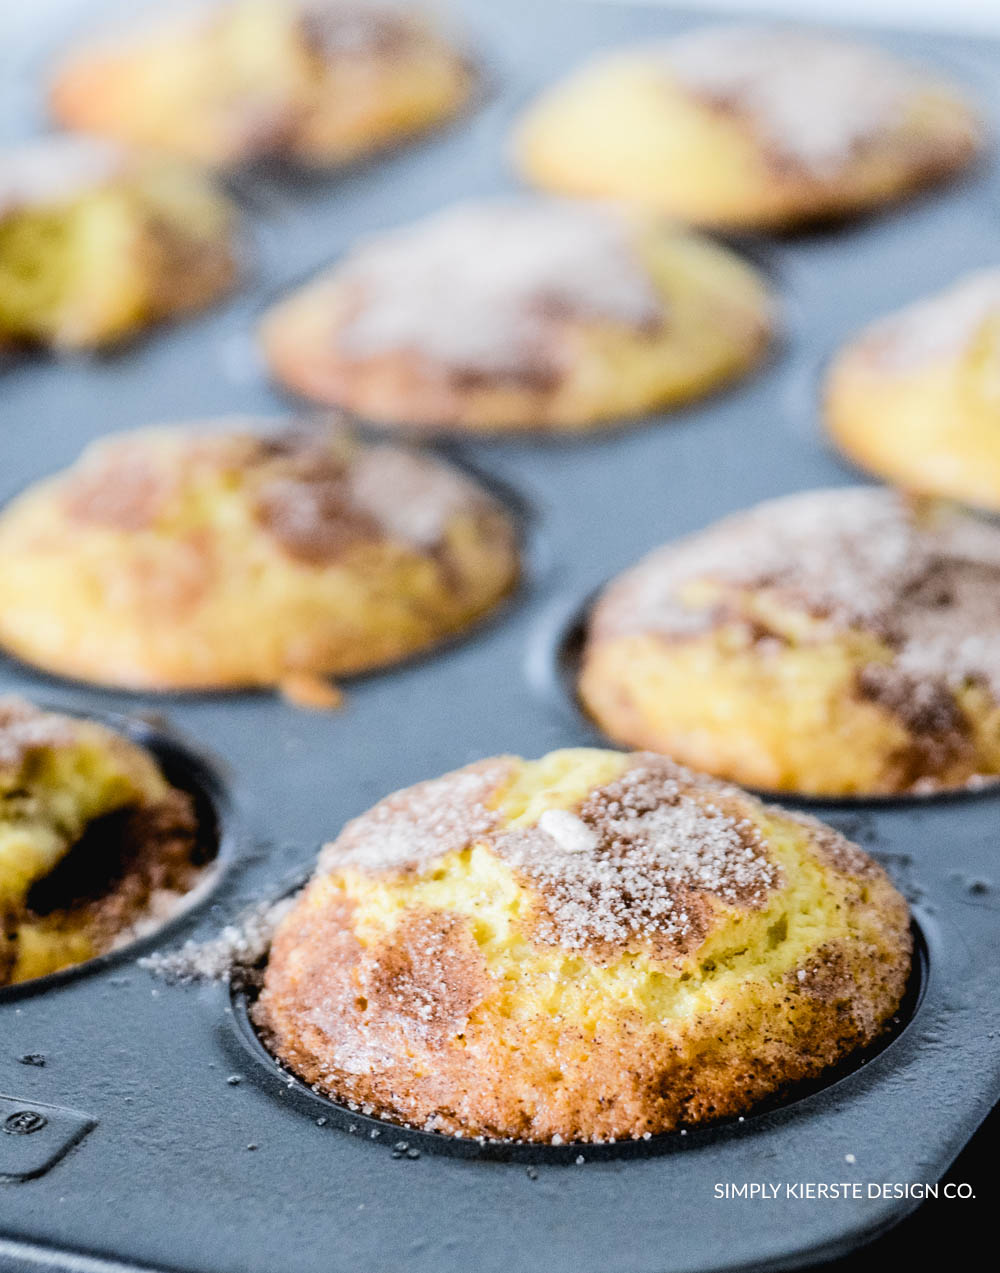 Cinnamon Sugar Muffins | Quick and Easy Muffin Recipe